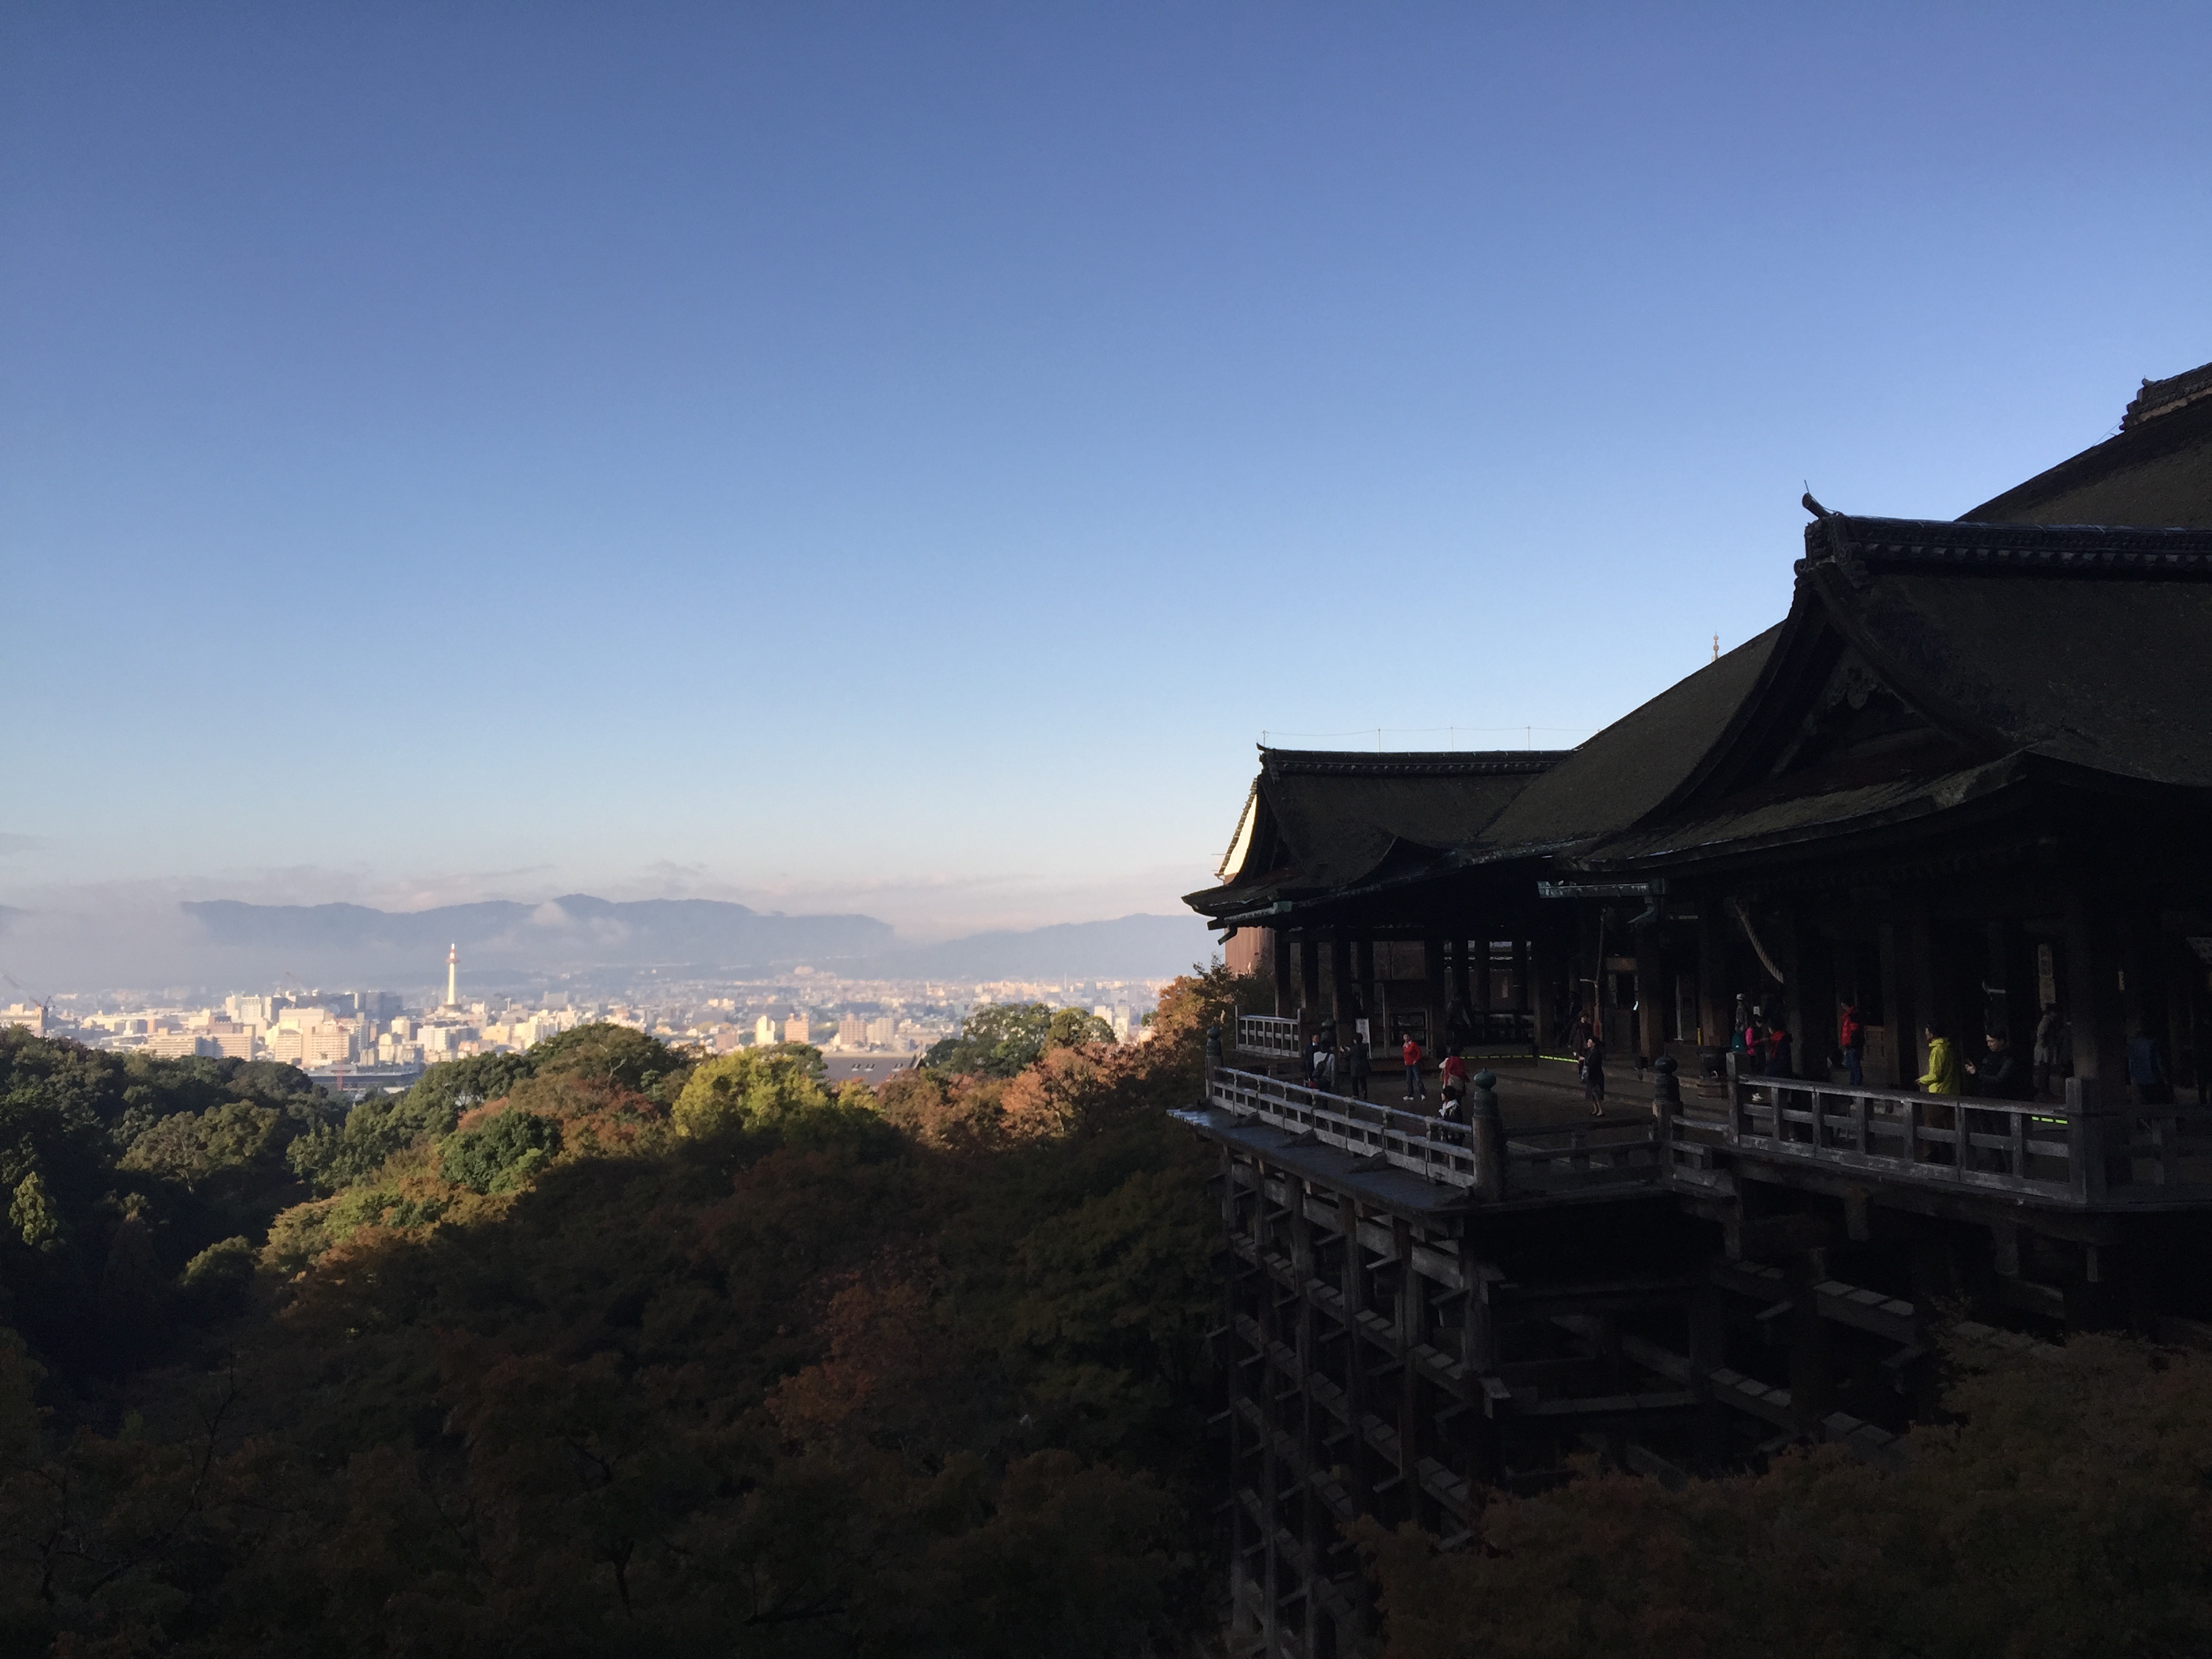 清水の舞台で有名な京都 清水寺は舞台 音羽の滝 仁王門など見所満載 一味違う京都旅行を楽しむ 京都観光案内 動画有り